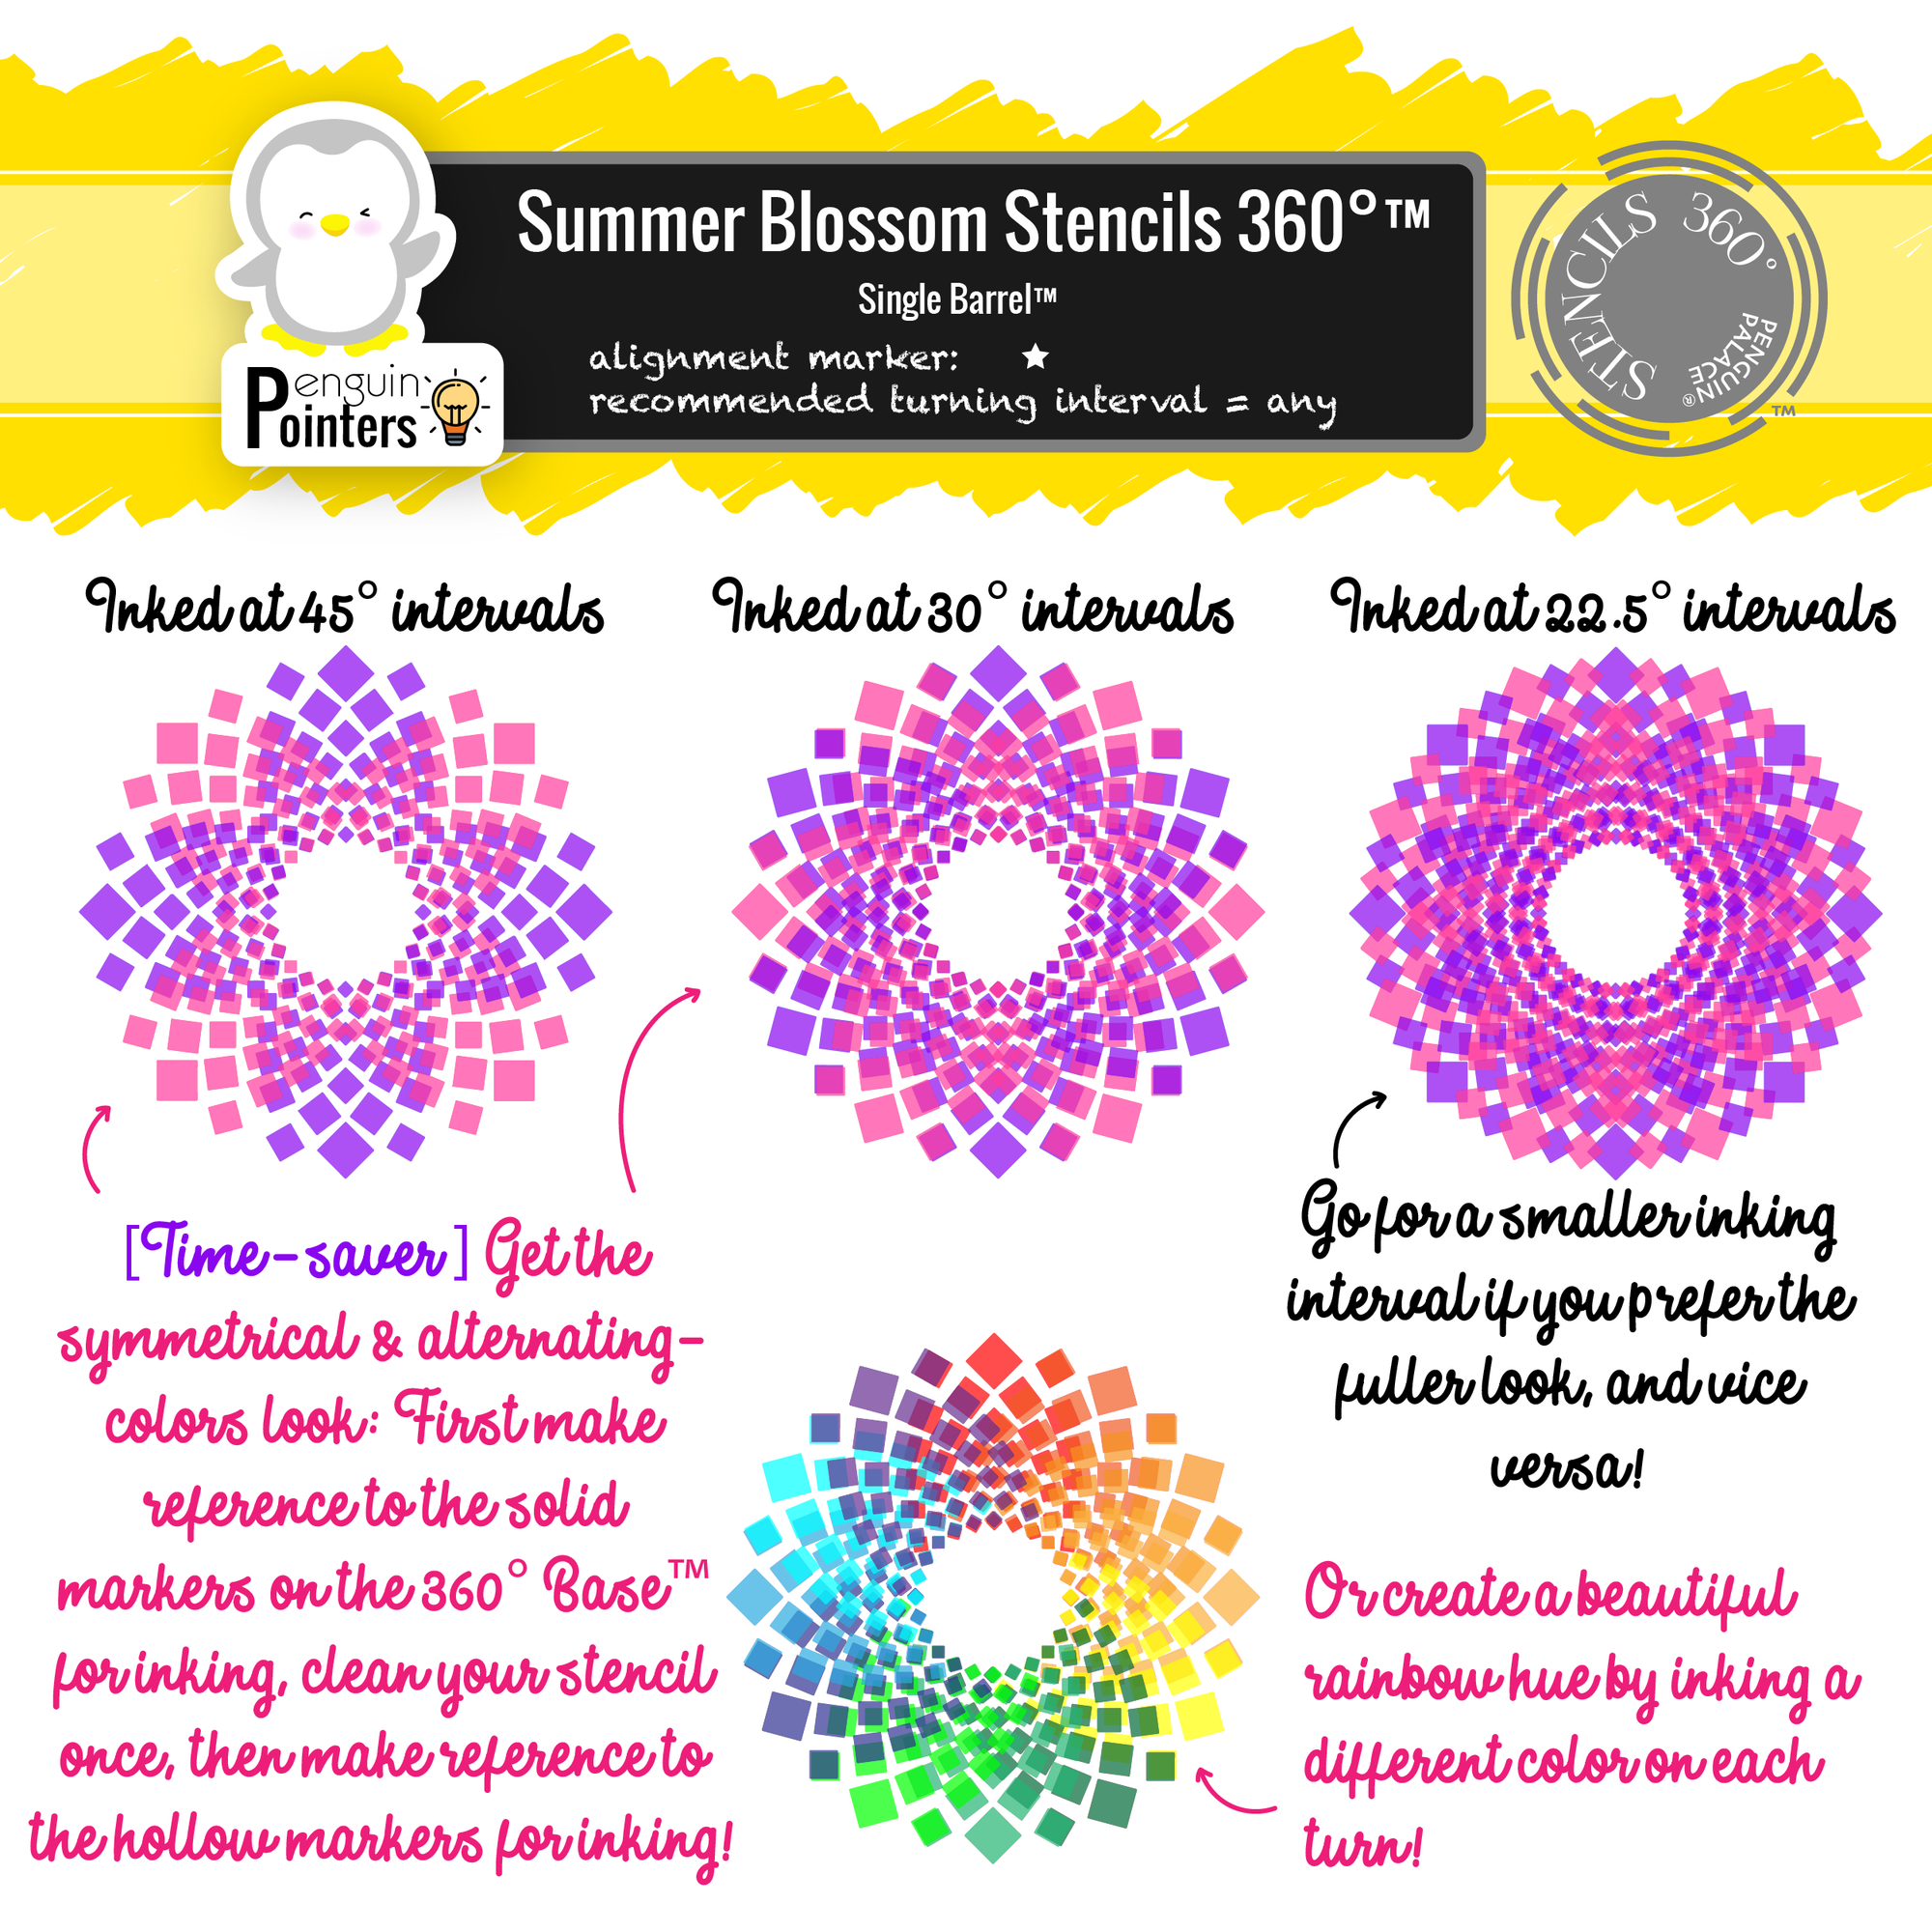 Summer Blossom Stencils 360°™